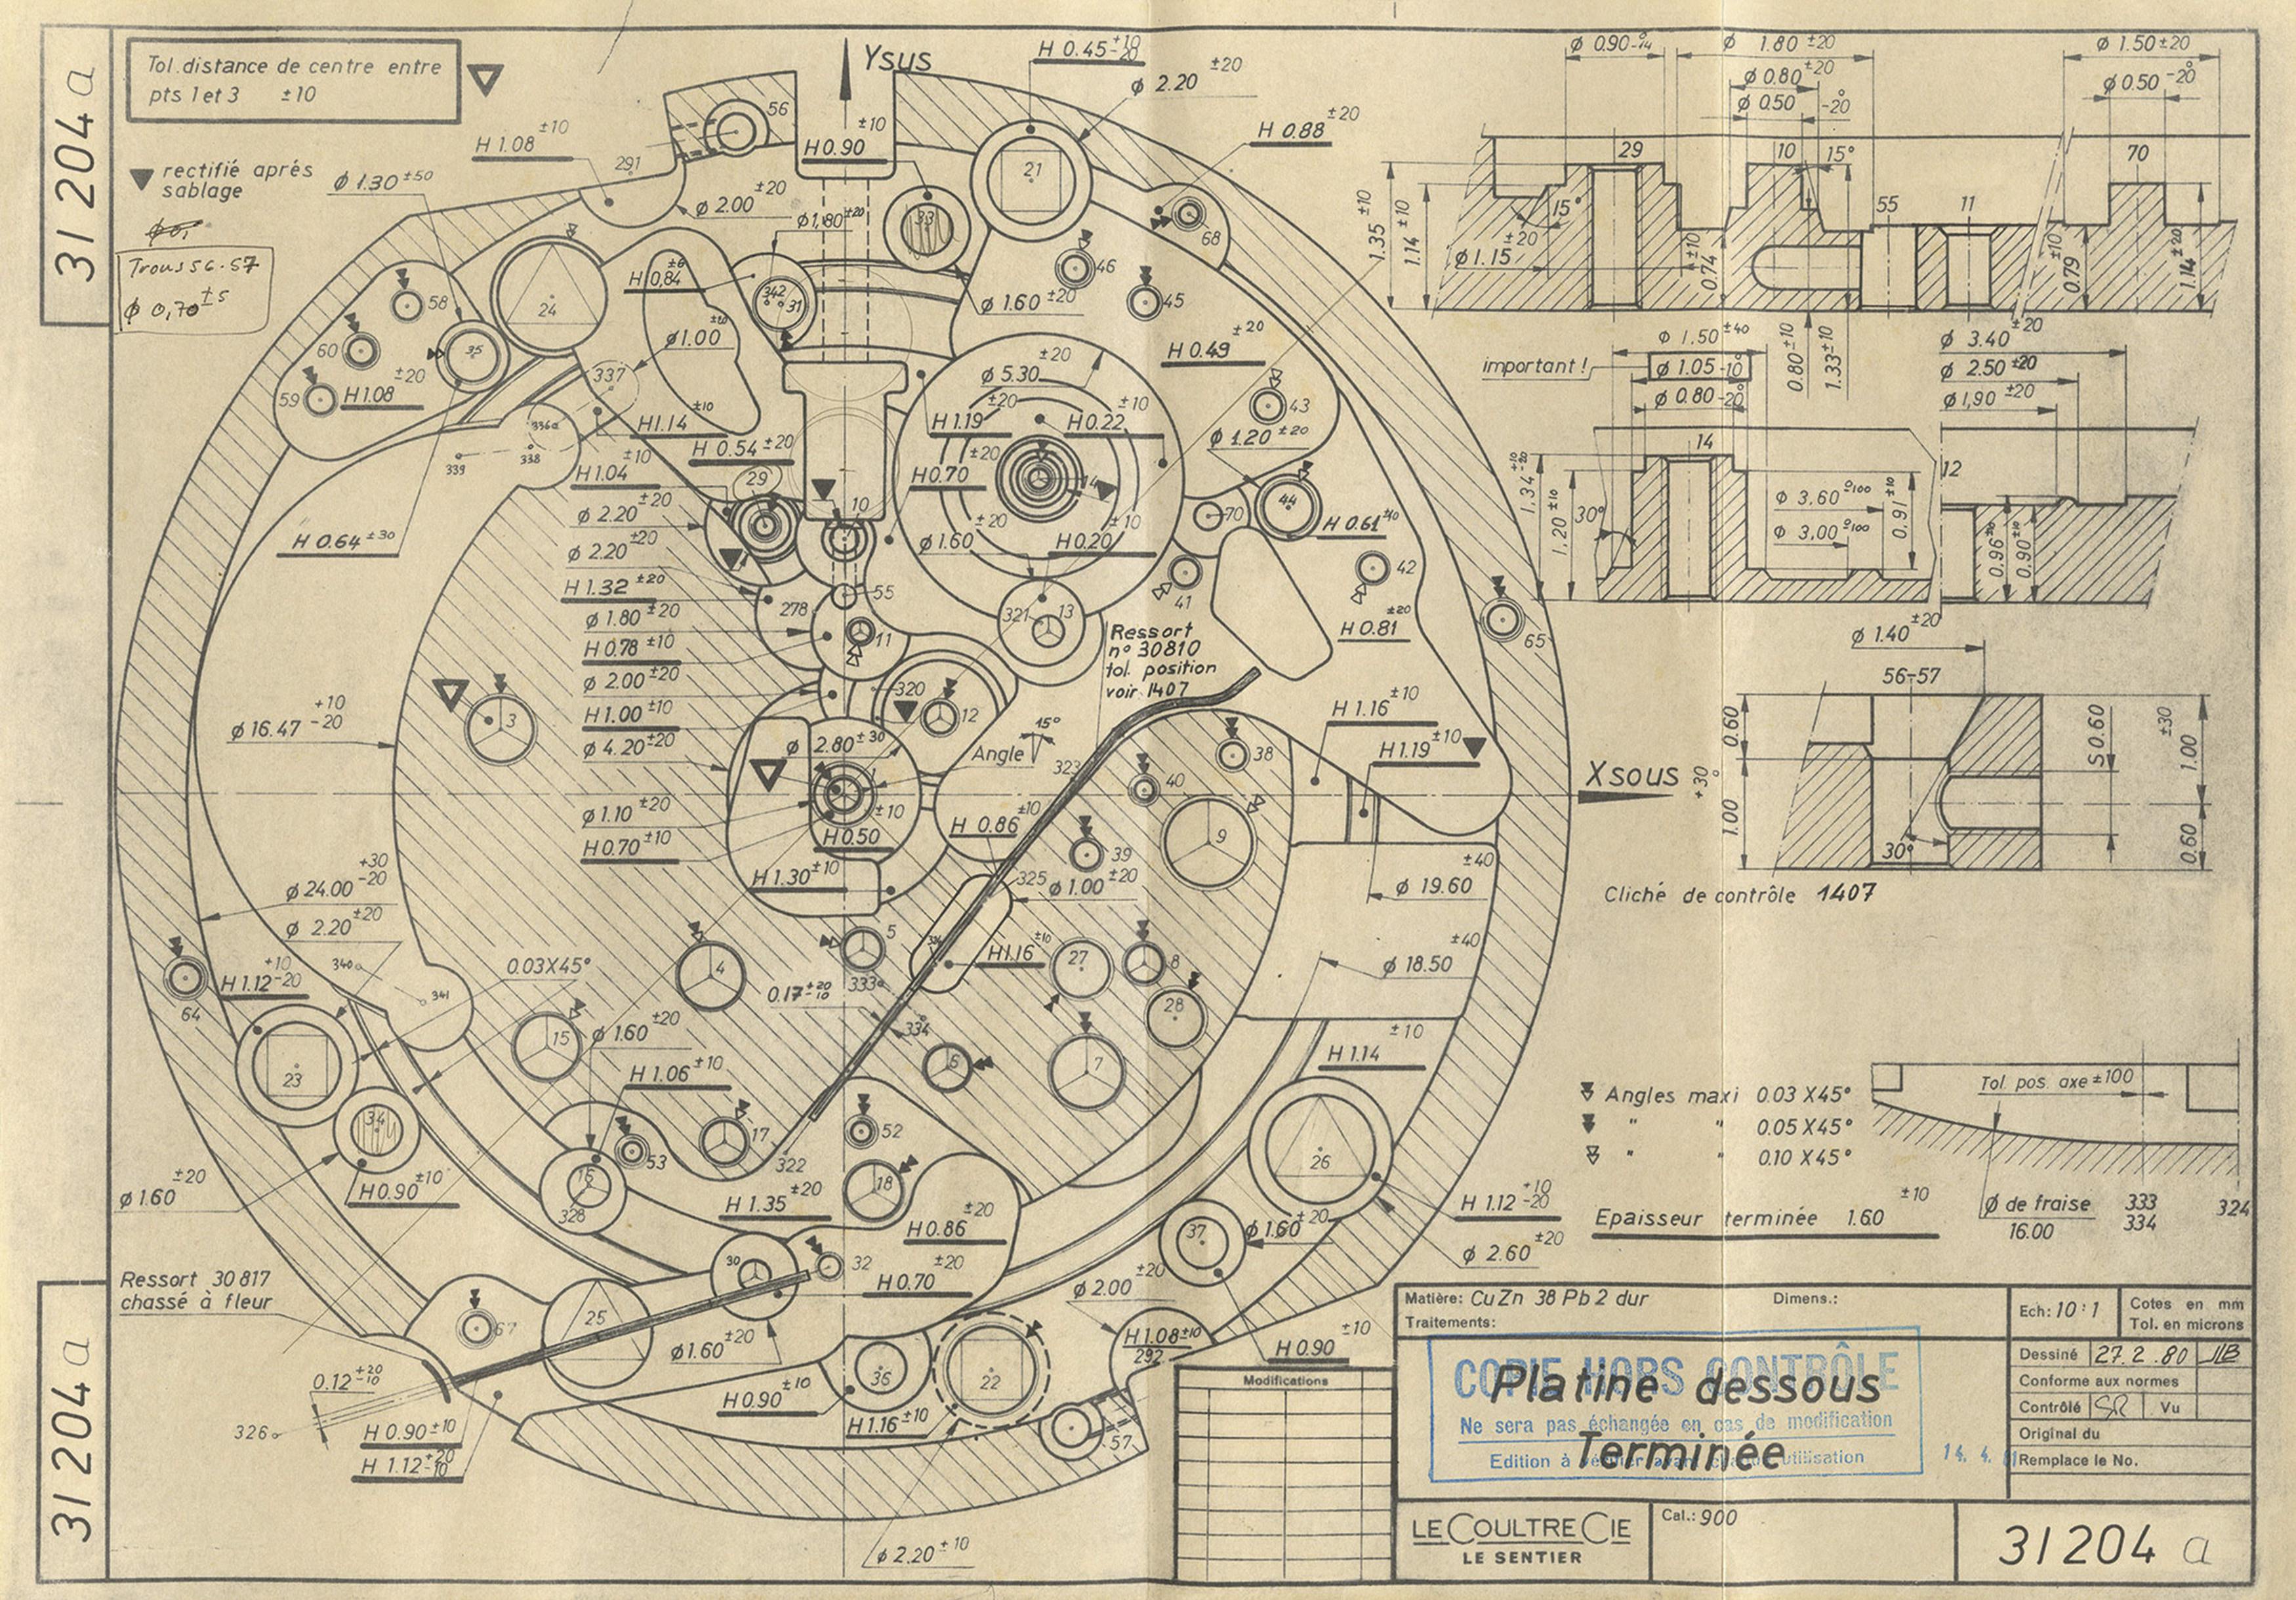 Plan of the Calibre 2123 baseplate Copy of LeCoultre & Cie Plan no. 31204a. Audemars Piguet Archives.